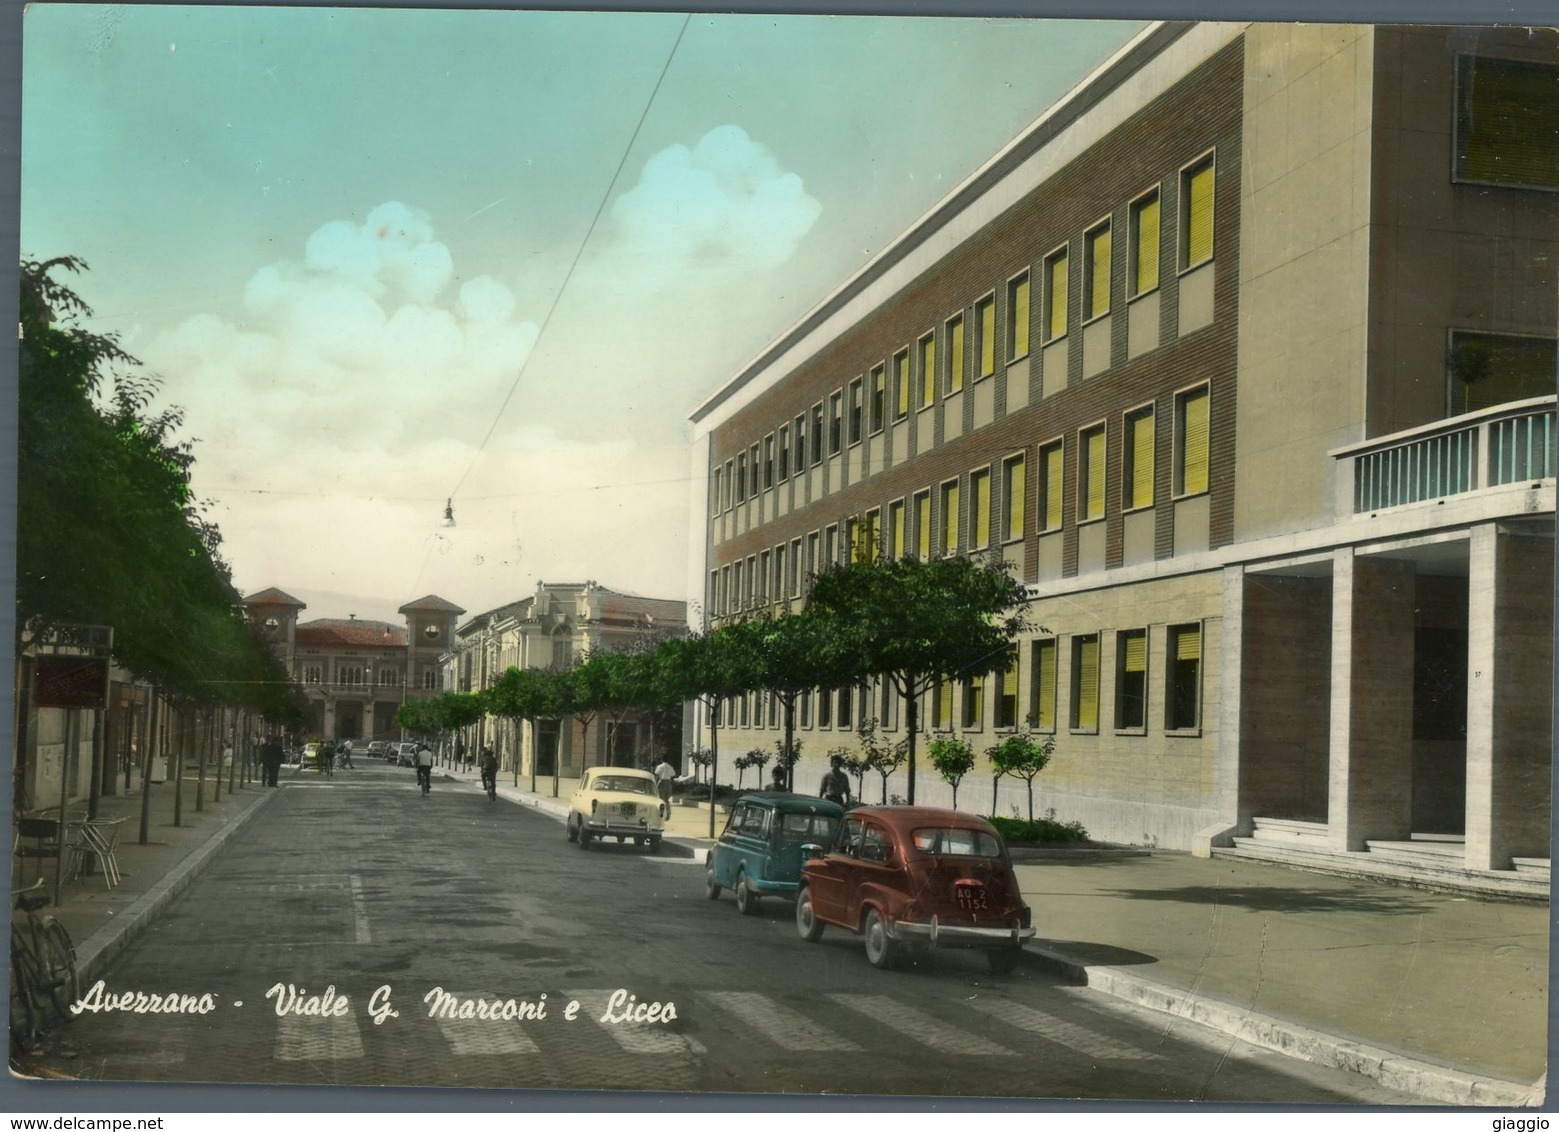 °°° Cartolina N. 16 Avezzano Viale G.  Marconi E Liceo Viaggiata °°° Avezzano - Avezzano